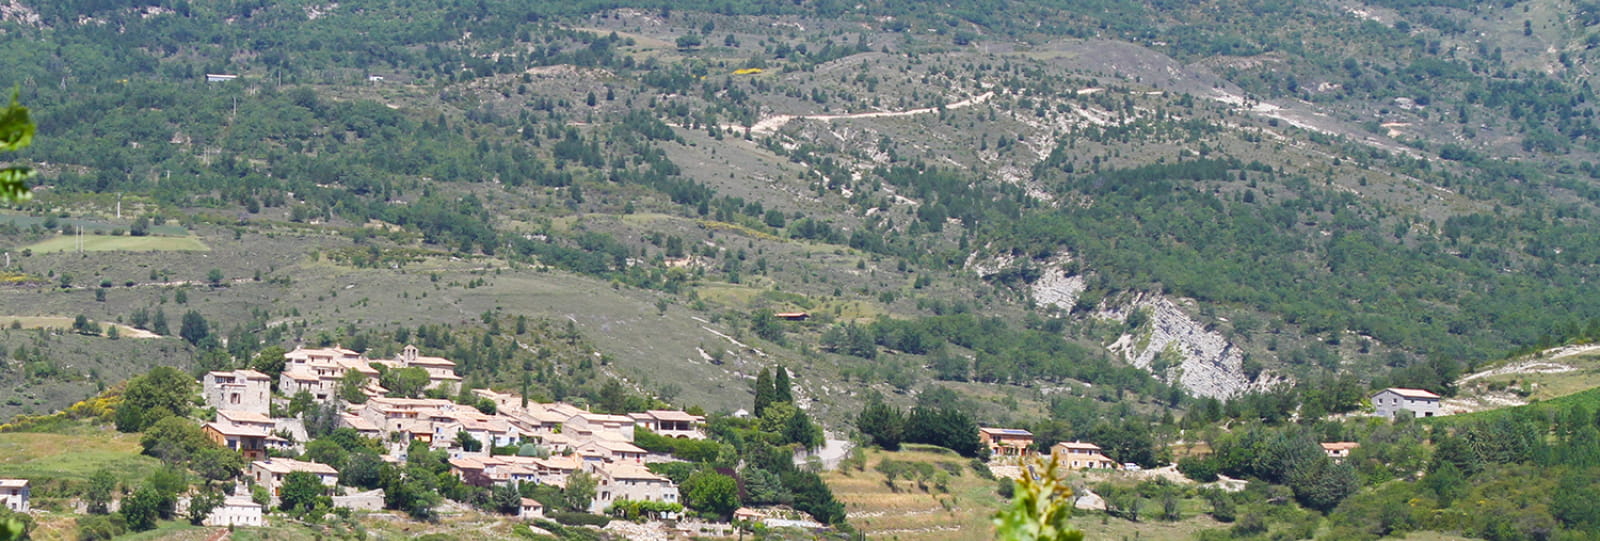 Village d'Arpavon